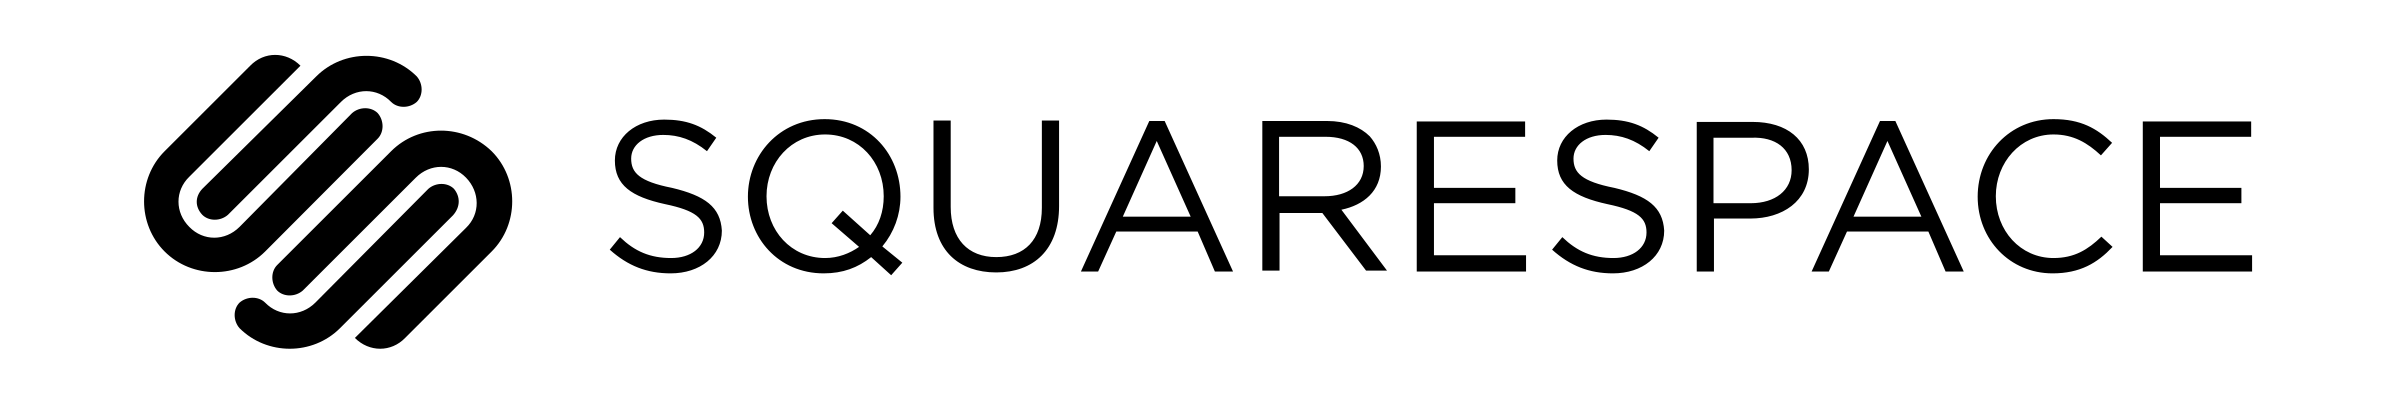 Squarespace Logo - squarespace-logo-transparent | This Week In Startups